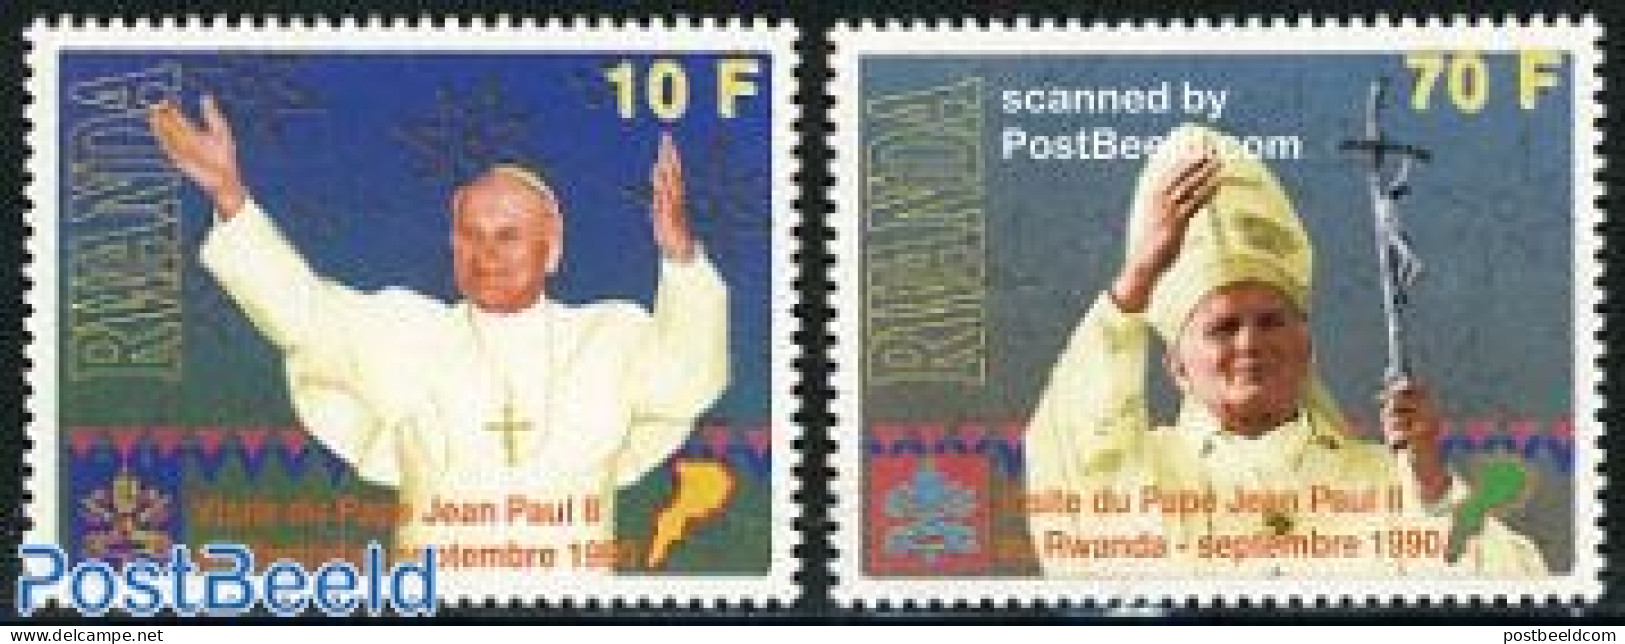 Rwanda 1990 Visit Of Pope John Paul II 2v, Mint NH, Religion - Pope - Religion - Papes